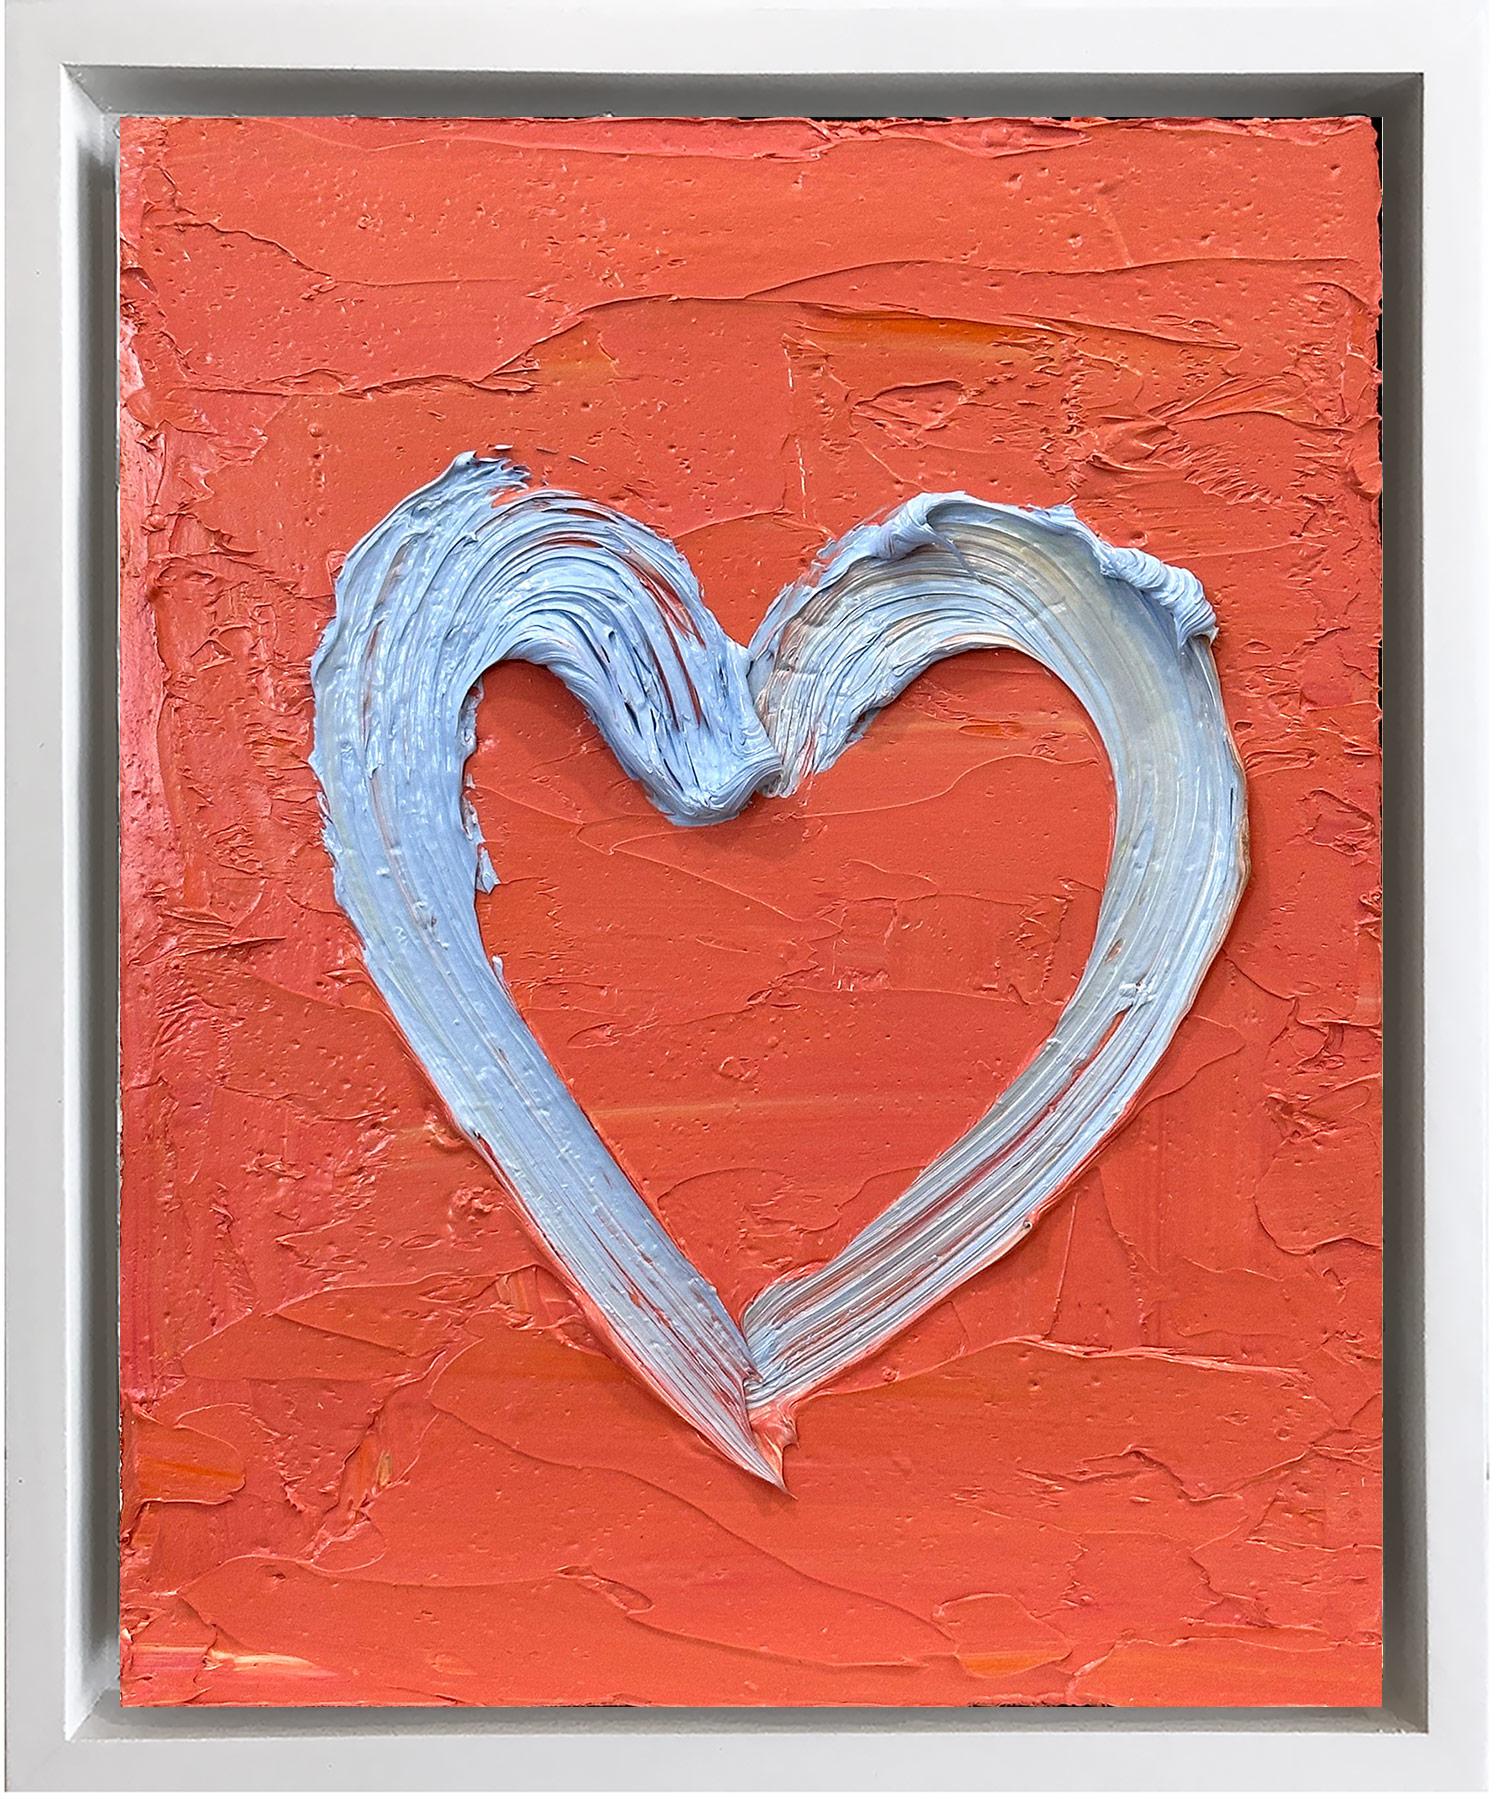 Cindy Shaoul Abstract Painting – "My Lululemon Heart" Zeitgenössisches Pop Art Ölgemälde mit weißem Schweberahmen